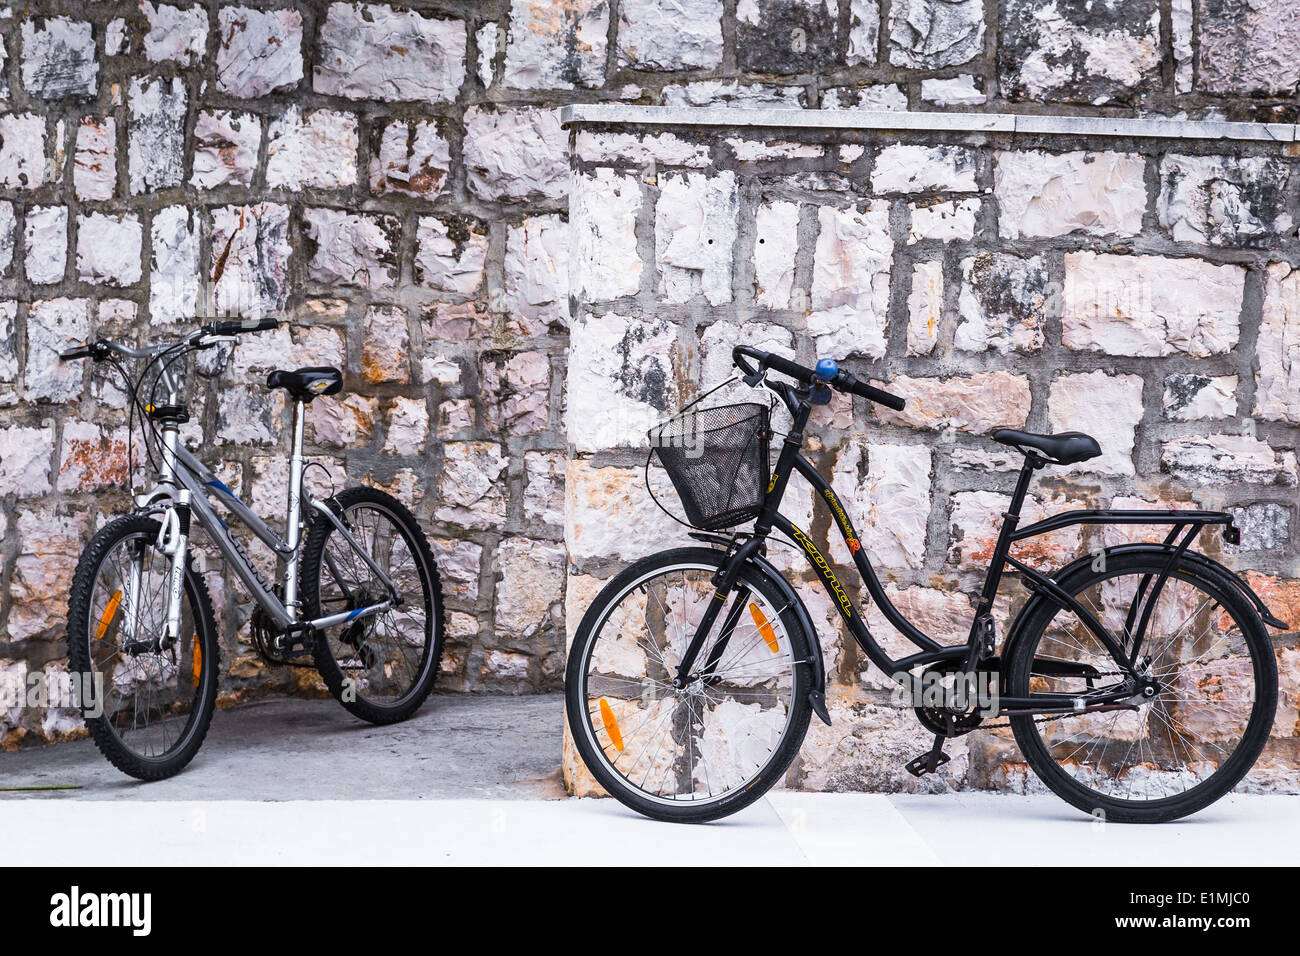 zwei Fahrräder werden gezeigt, eine Wand in Vis Insel Kroatien gelehnt. das Schwarz der Bikes kontrastiert gegen den Stein Stockfoto